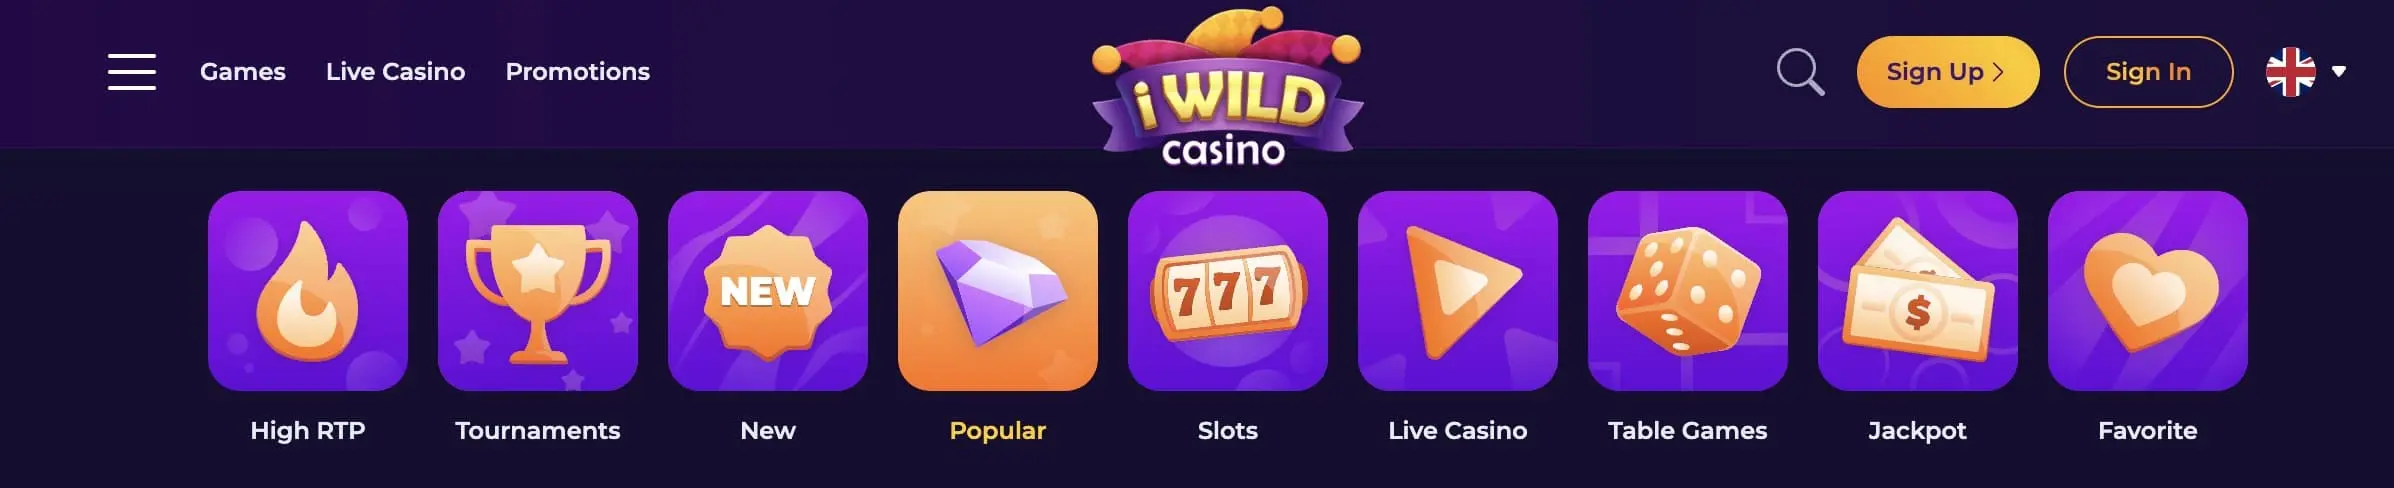 iWild casino games